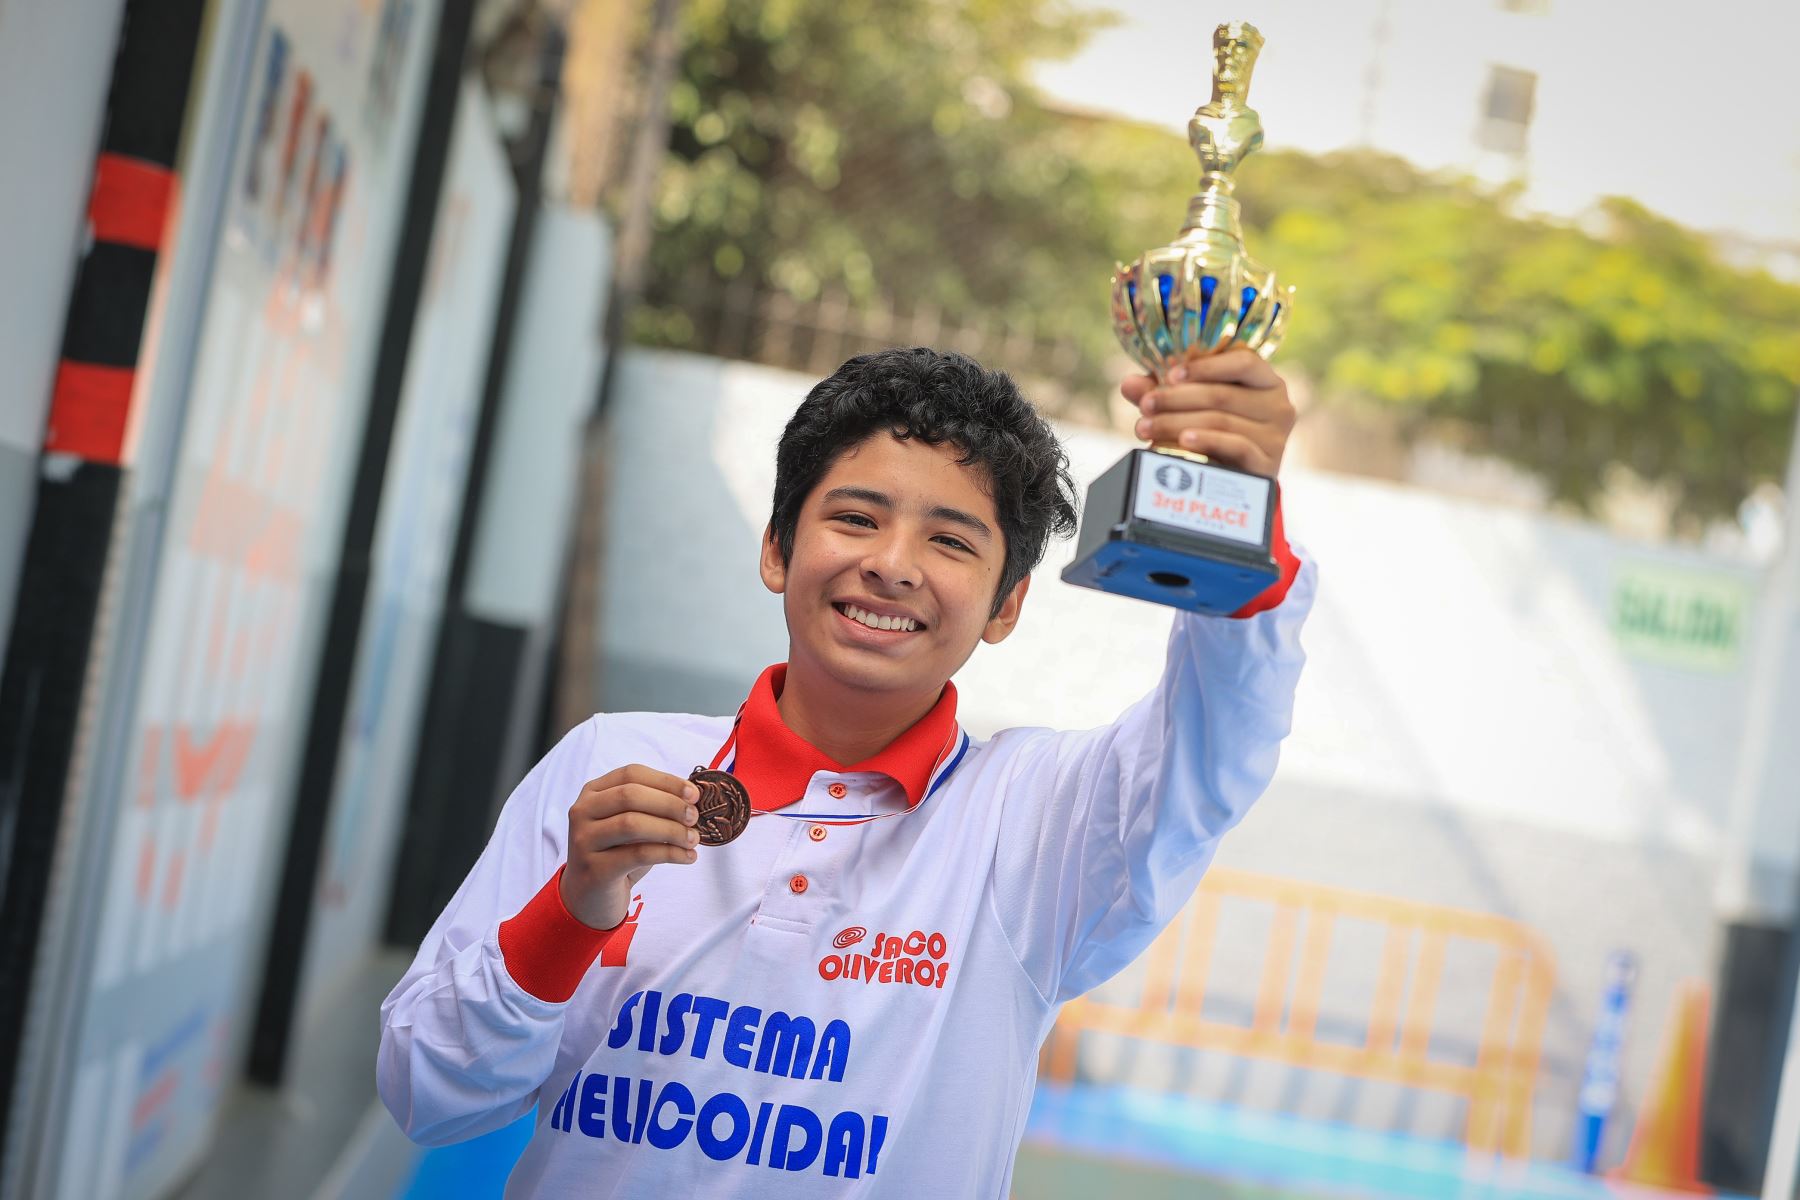 El equipo peruano se coronó campeón mundial escolar de ajedrez en Panamá, tras superar a cerca de 600 ajedrecistas de 36 países. Fabian Reyes estudiante de 16 años del Colegio Saco Oliveros obtuvo la medalla de bronce en su categoría. 
Foto: ANDINA/Andrés Valle